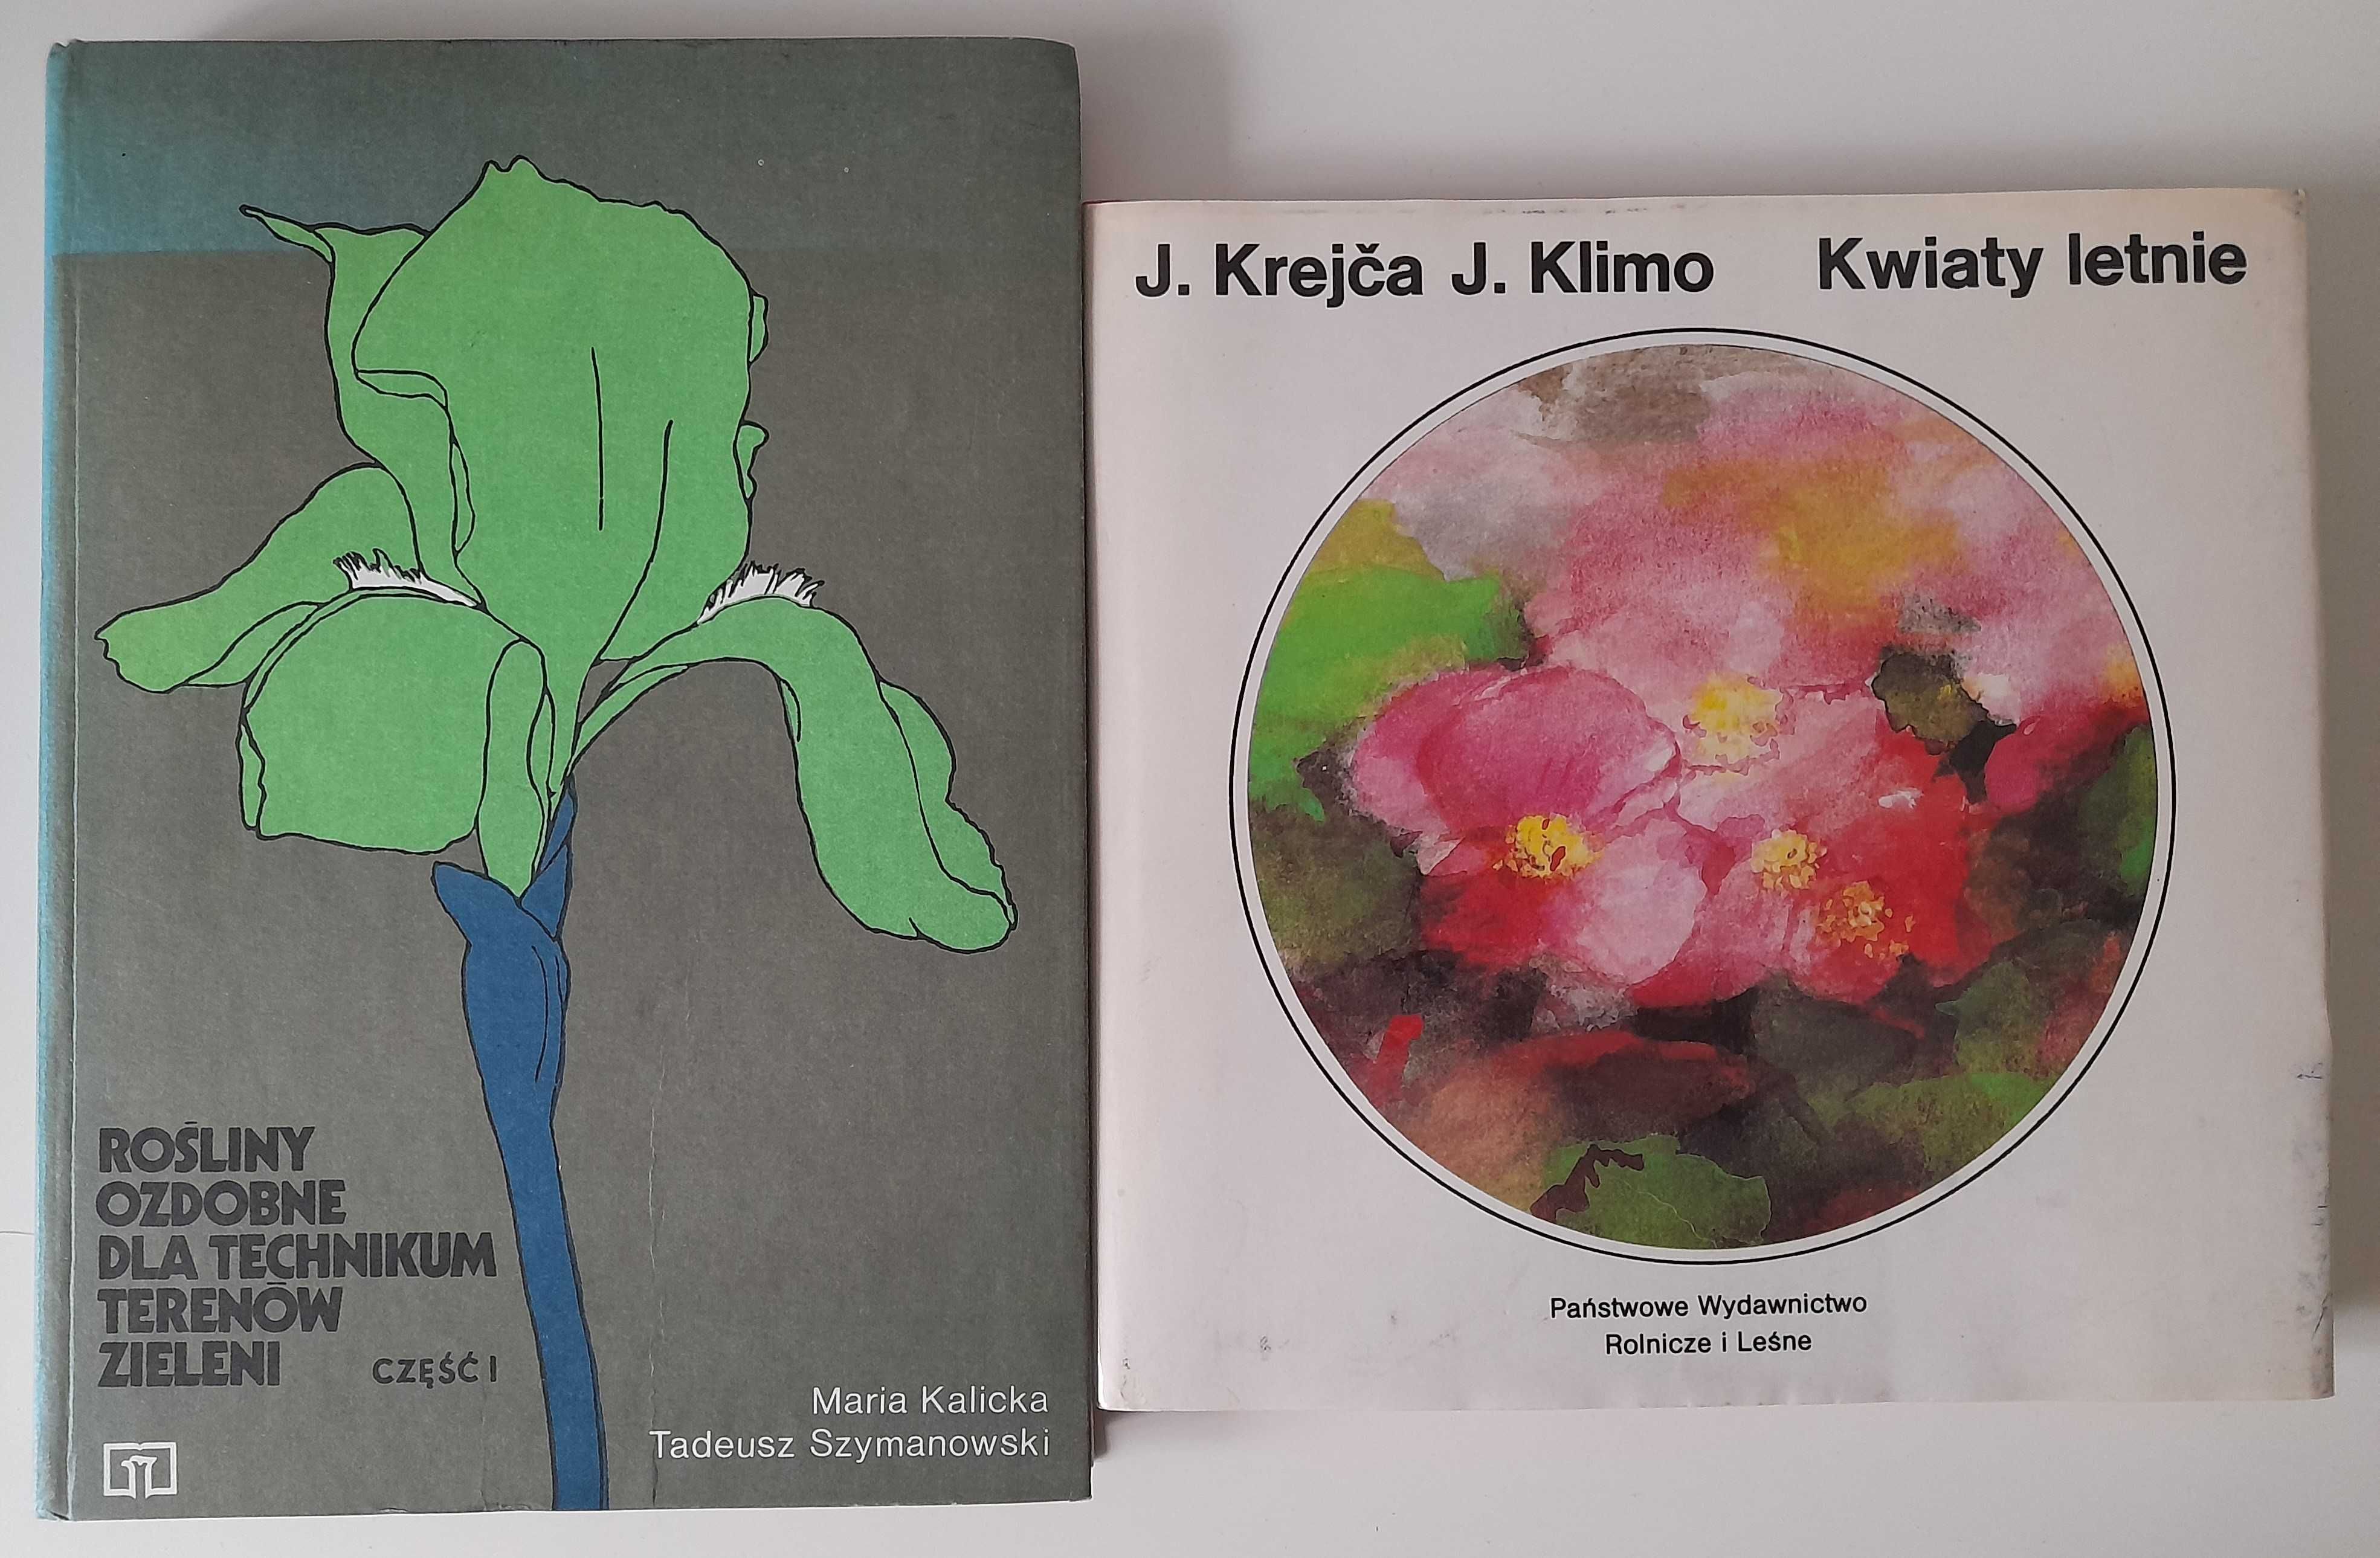 Kwiaty i krzewy ozdobne w ogródku Izabella Kiljańska + 2 książki